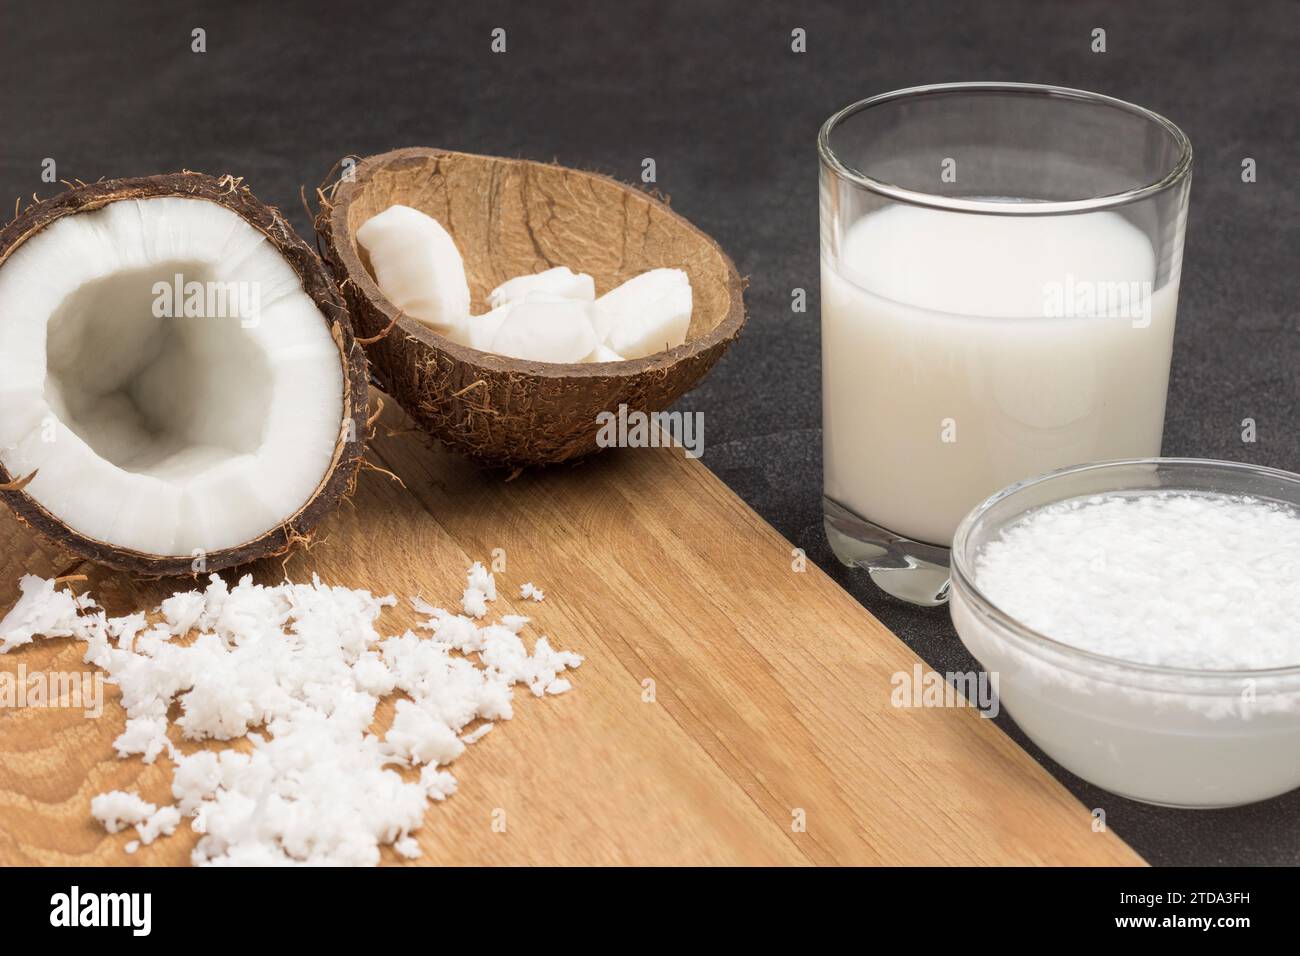 Latte di cocco nel bicchiere e nel recipiente. Fiocchi di cocco, metà di cocco fresco, conchiglie di cocco a bordo. Sfondo nero. Primo piano Foto Stock